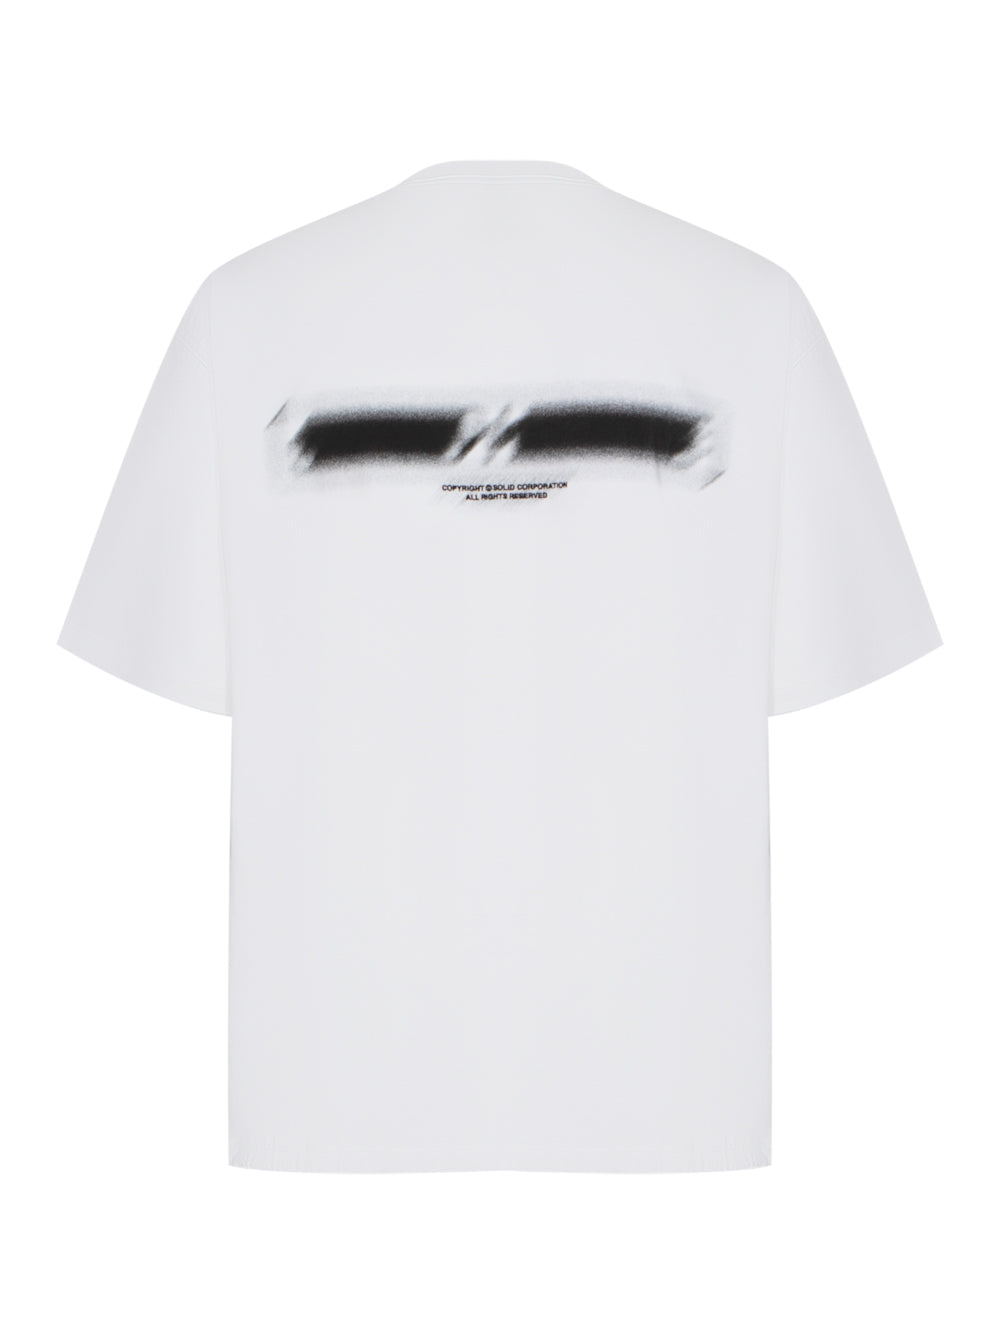 Blur T-Shirt (White)